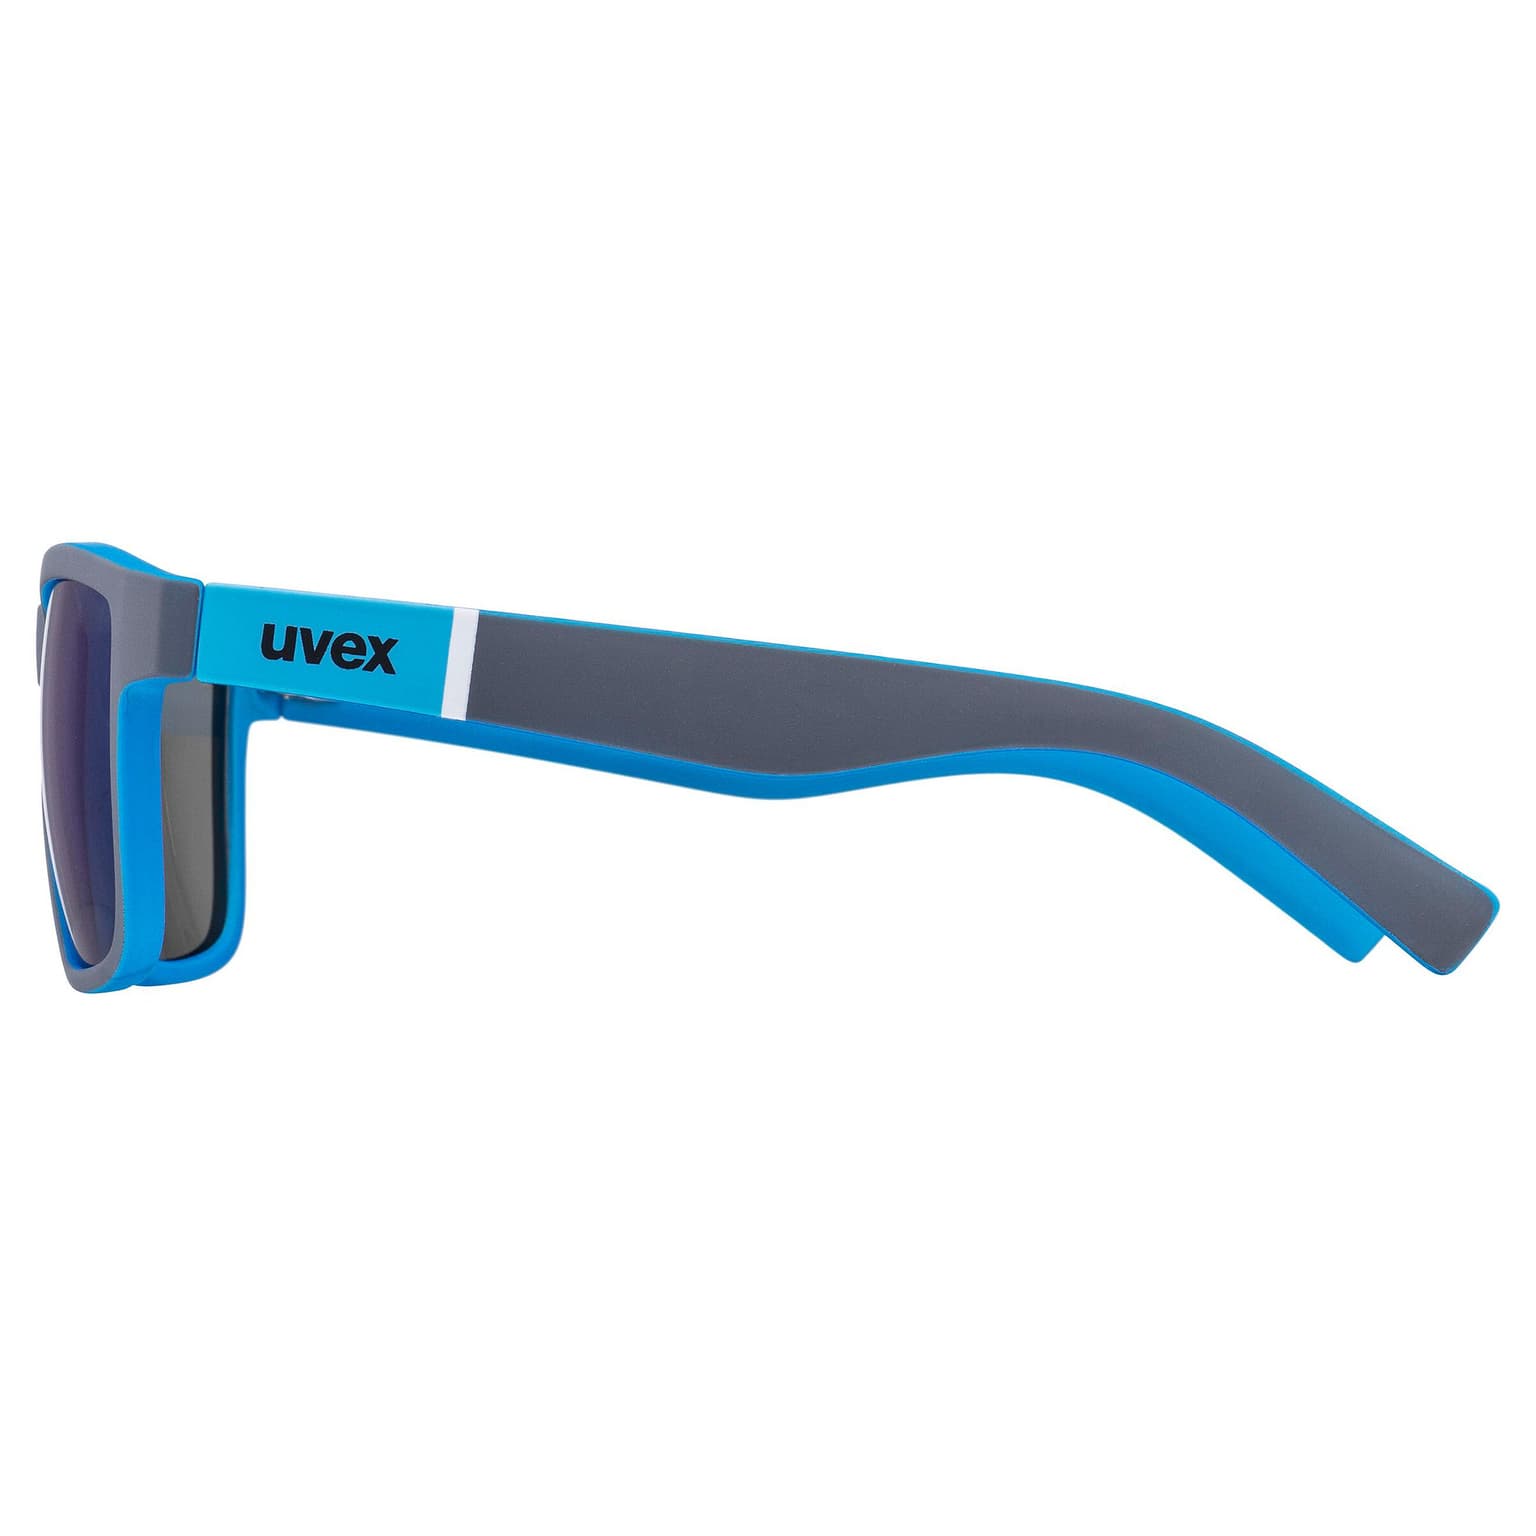 Uvex Uvex Lifestyle lgl 39 Sportbrille blau 2